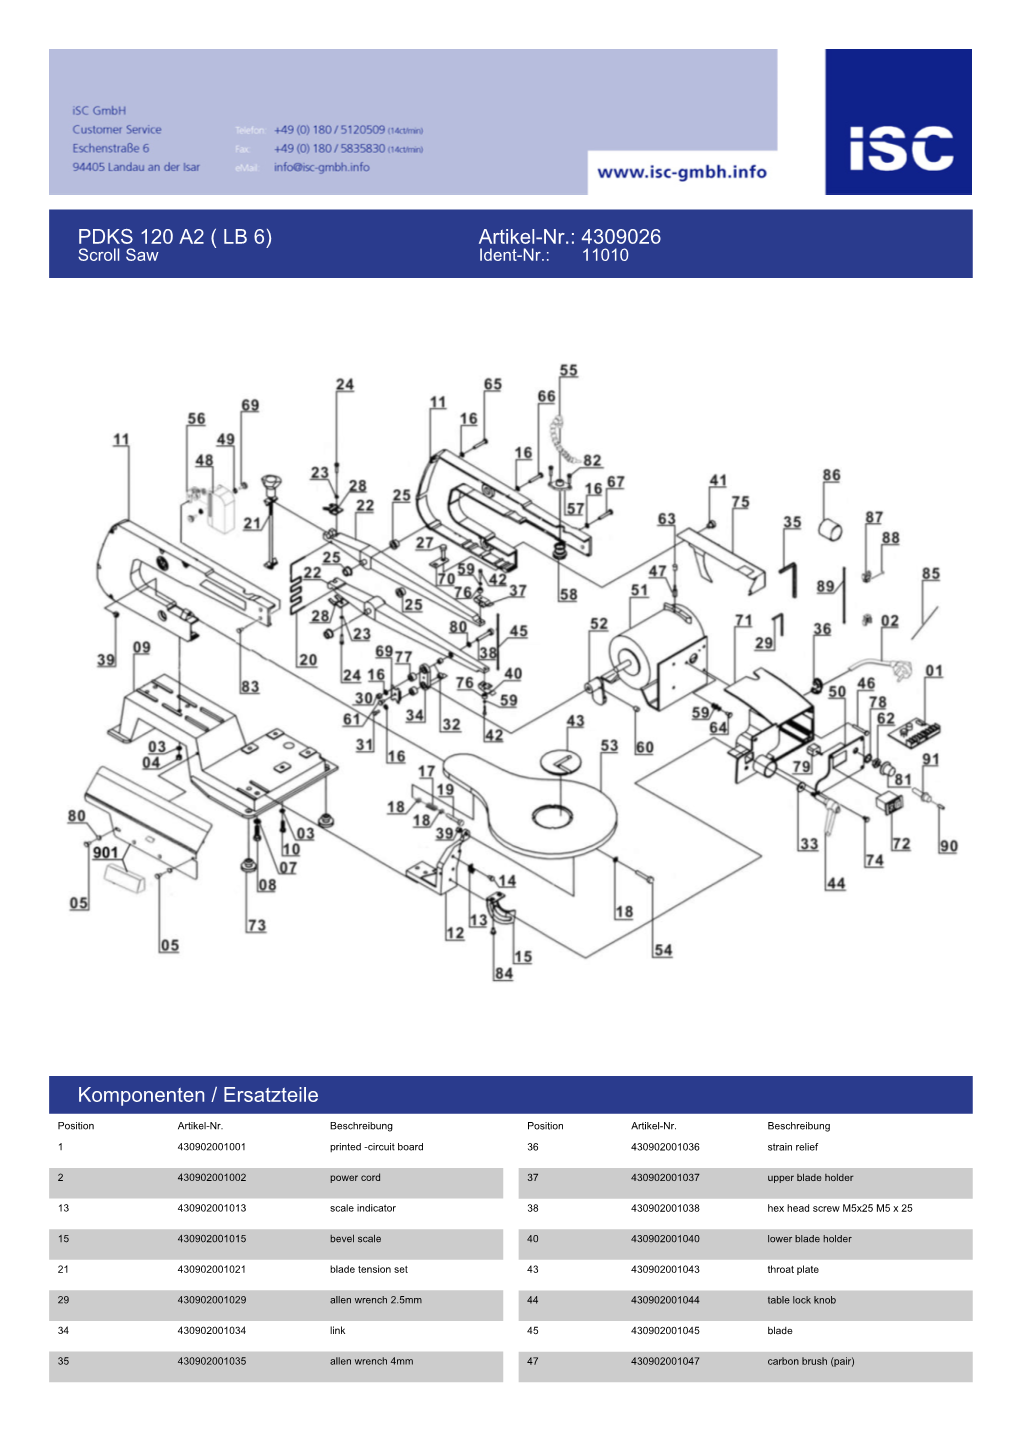 PDKS 120 A2 ( LB 6) Artikel-Nr.: 4309026 Komponenten / Ersatzteile